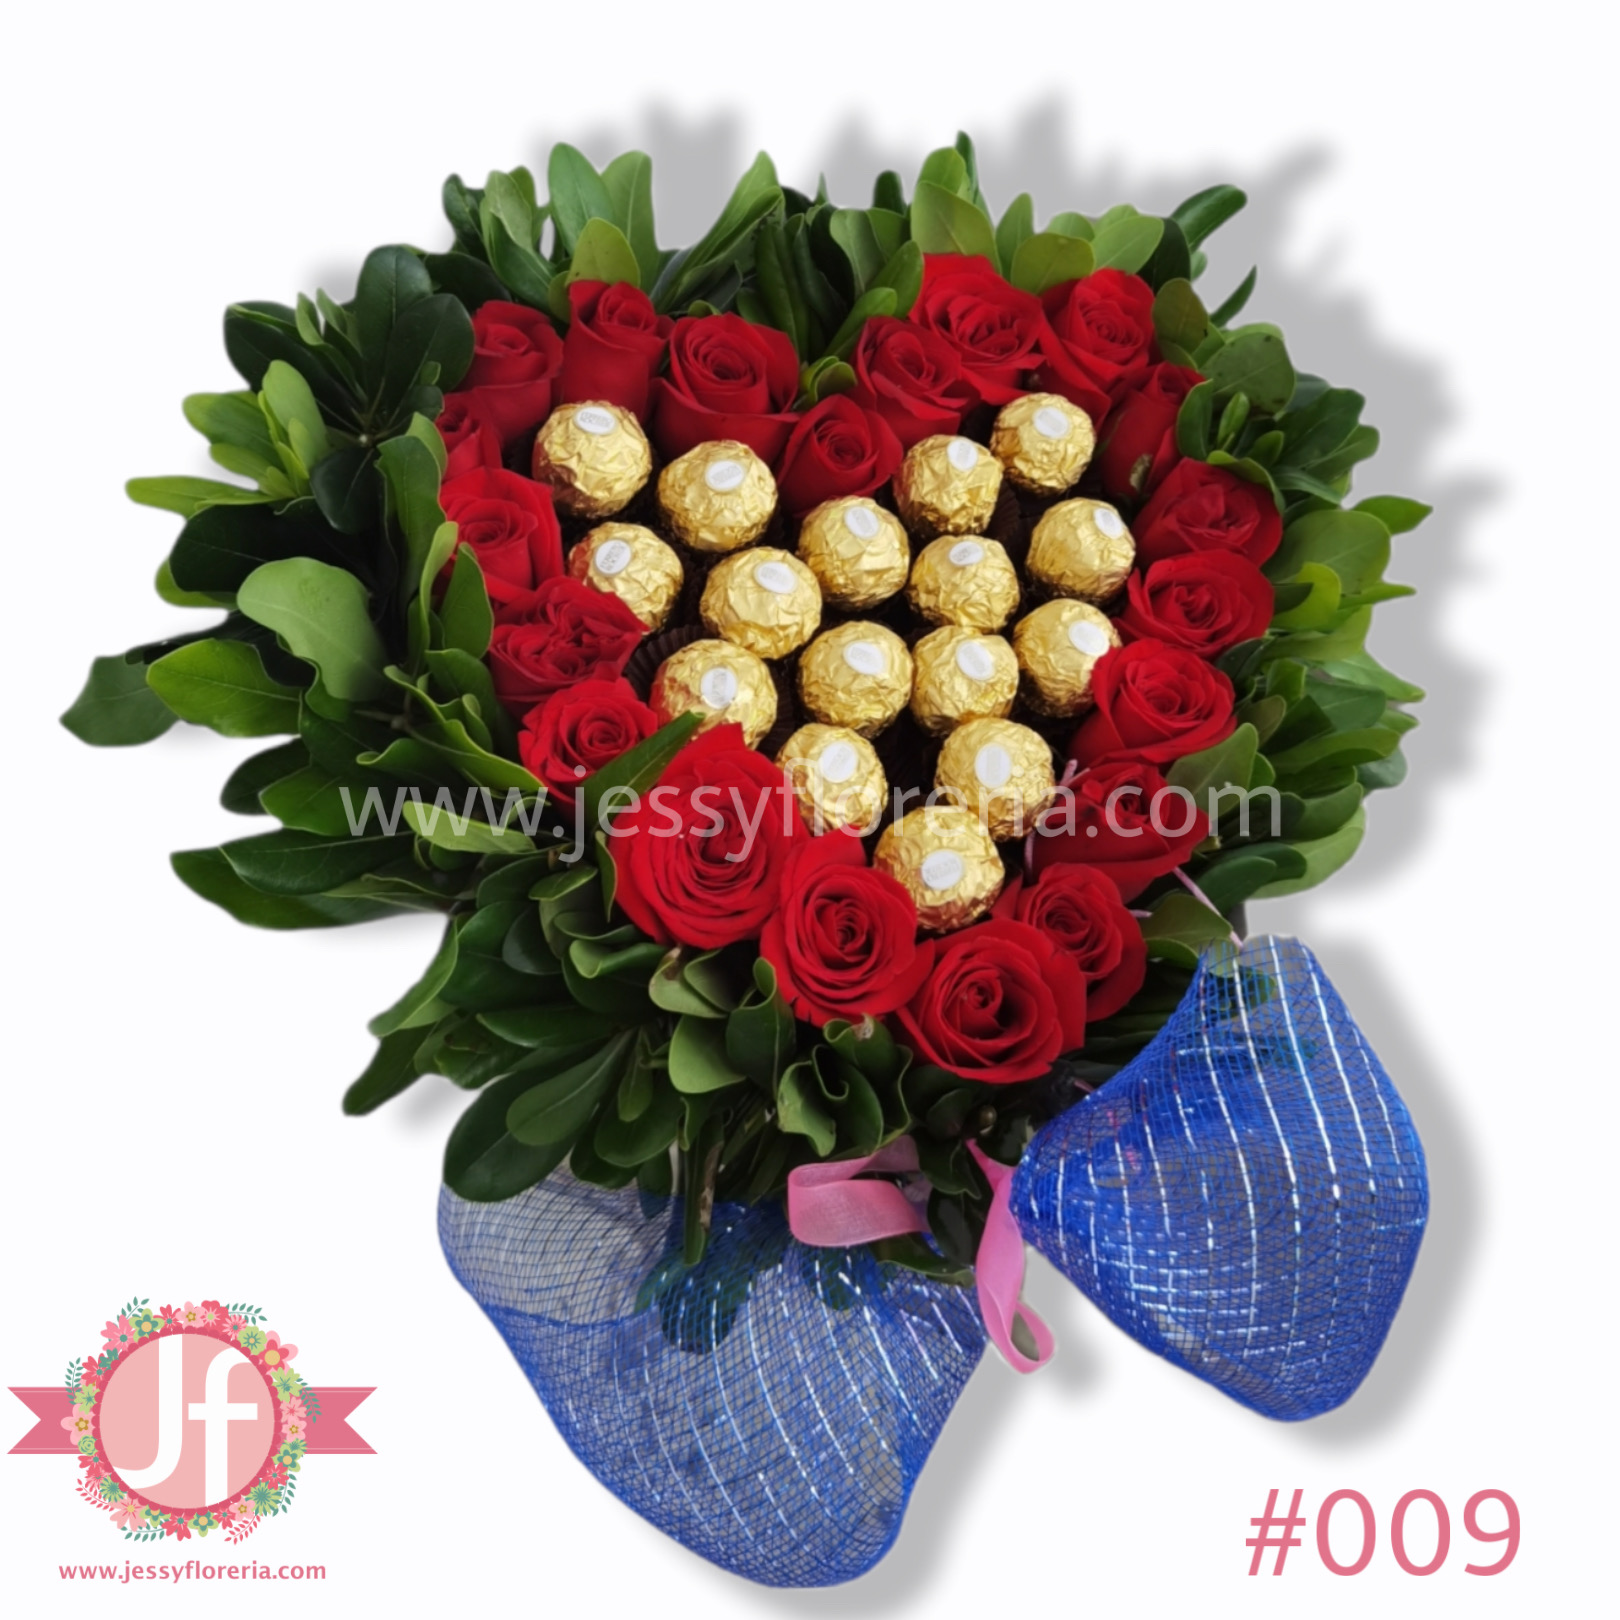 Corazón de rosas rojas y Ferreros - Envío GRATIS mismo día 2-4 Hrs